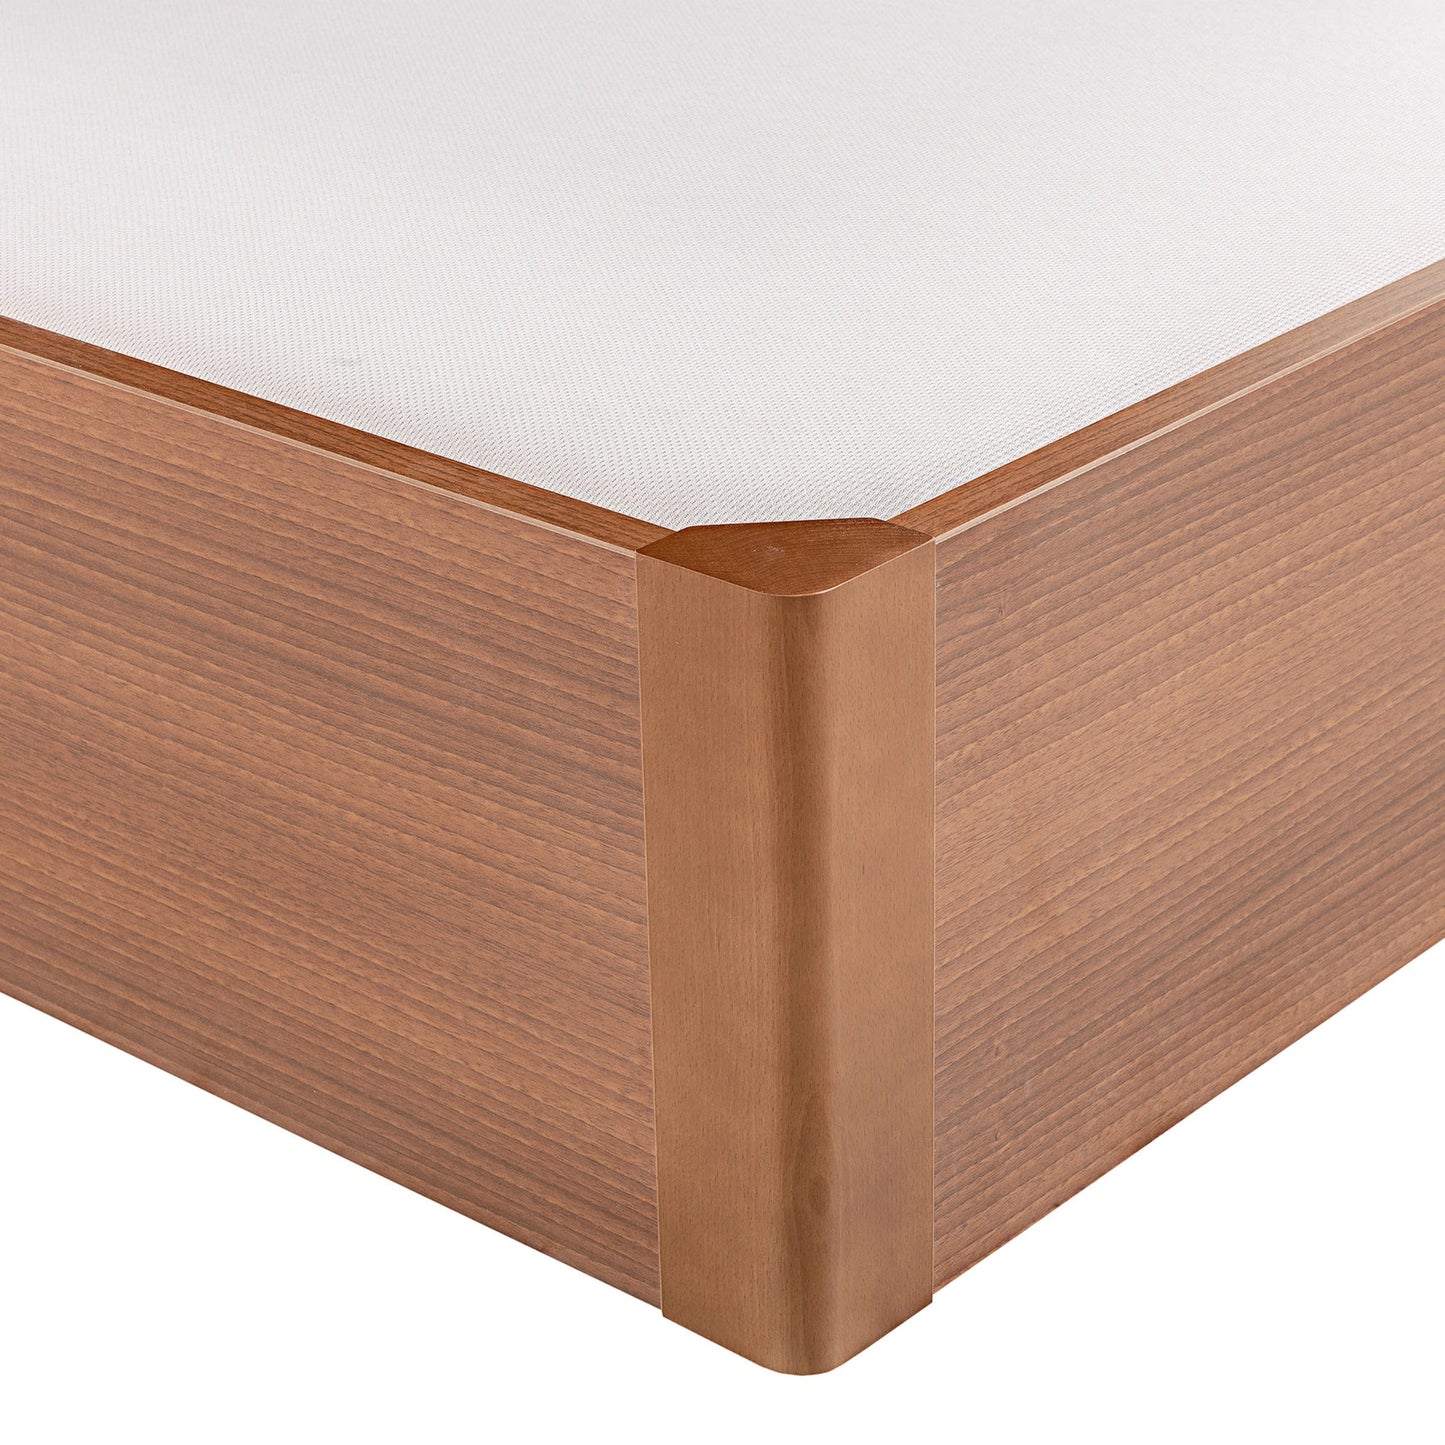 Canapé abatible de madera tapa única de color cerezo - DESIGN - 135x200